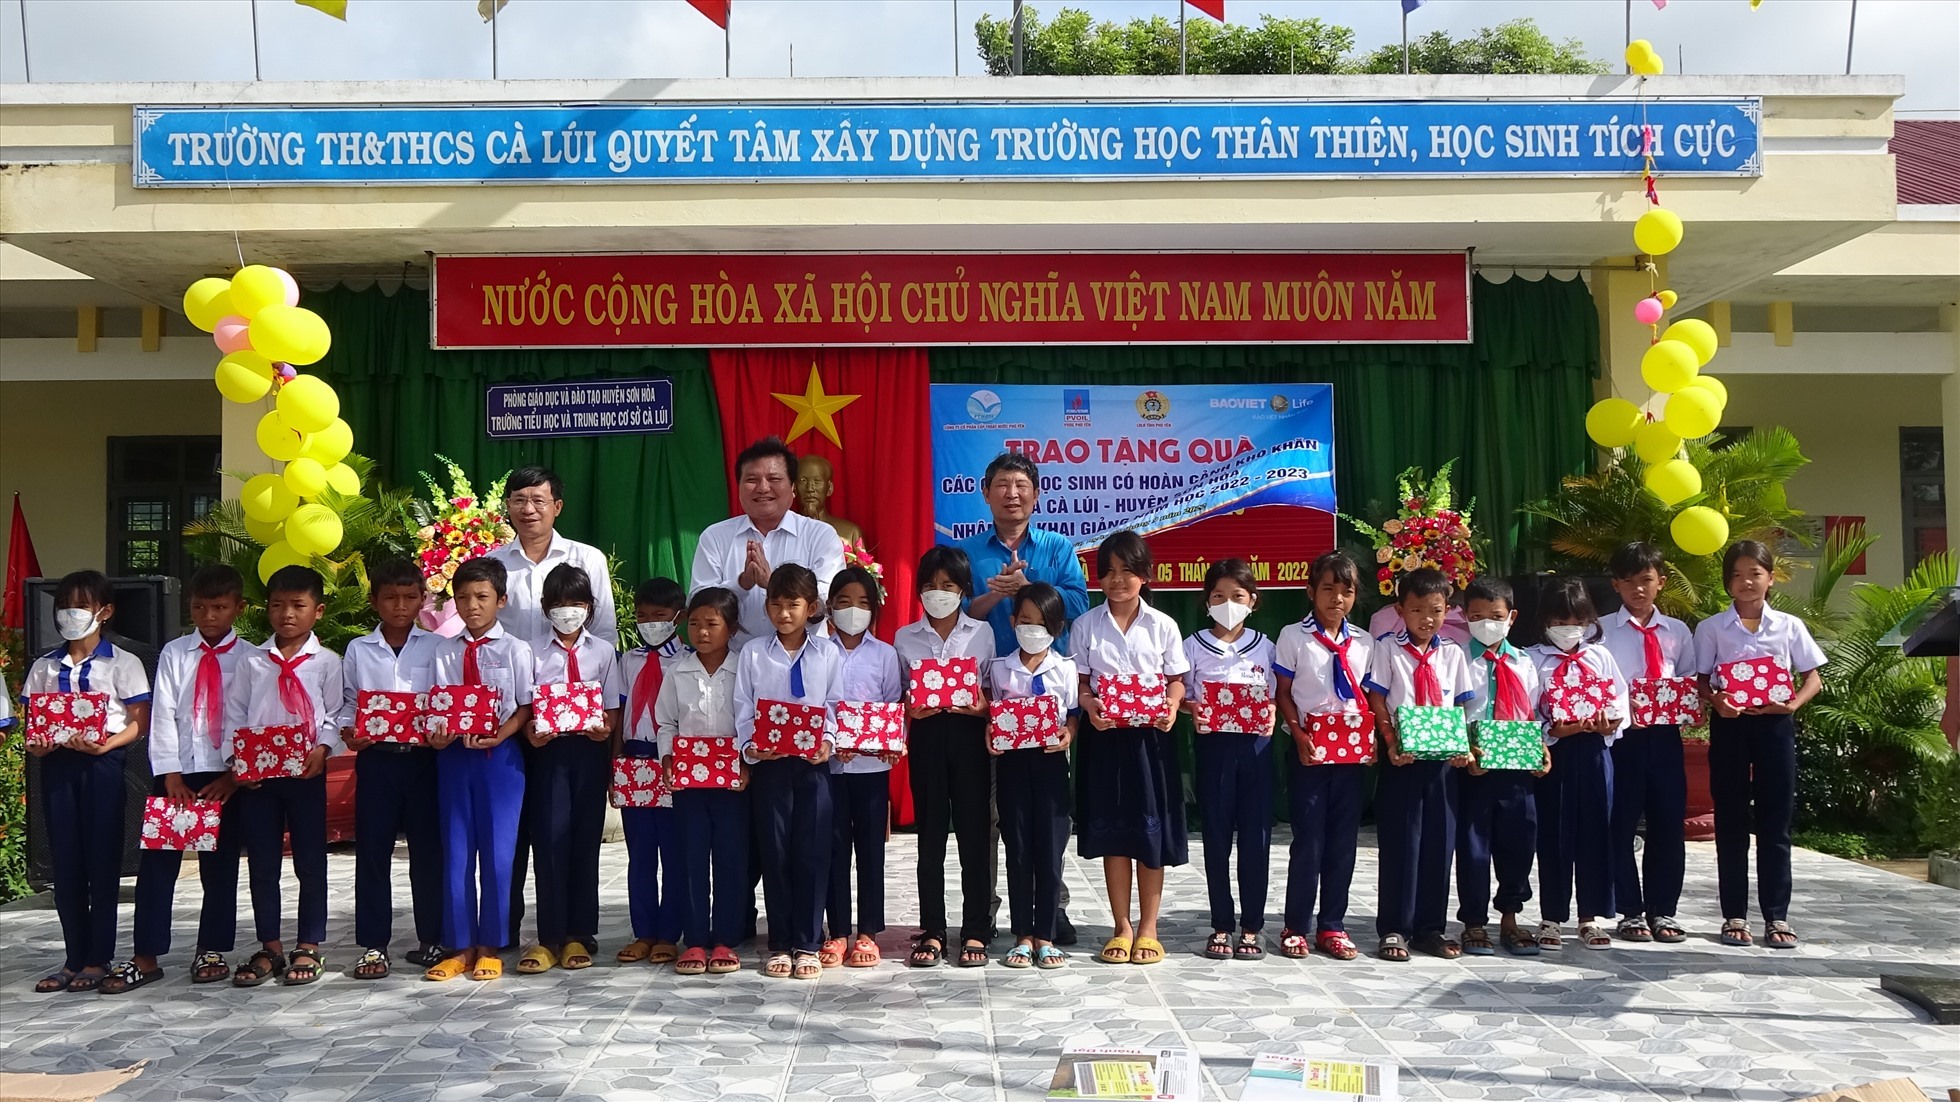 3.000 tập vở mới được LĐLĐ tỉnh Phú Yên và các mạnh thường quân trao cho các em học sinh khó khăn Trường TH&THCS Cà Lúi trong lễ khai giảng. Ảnh: M.Tuấn